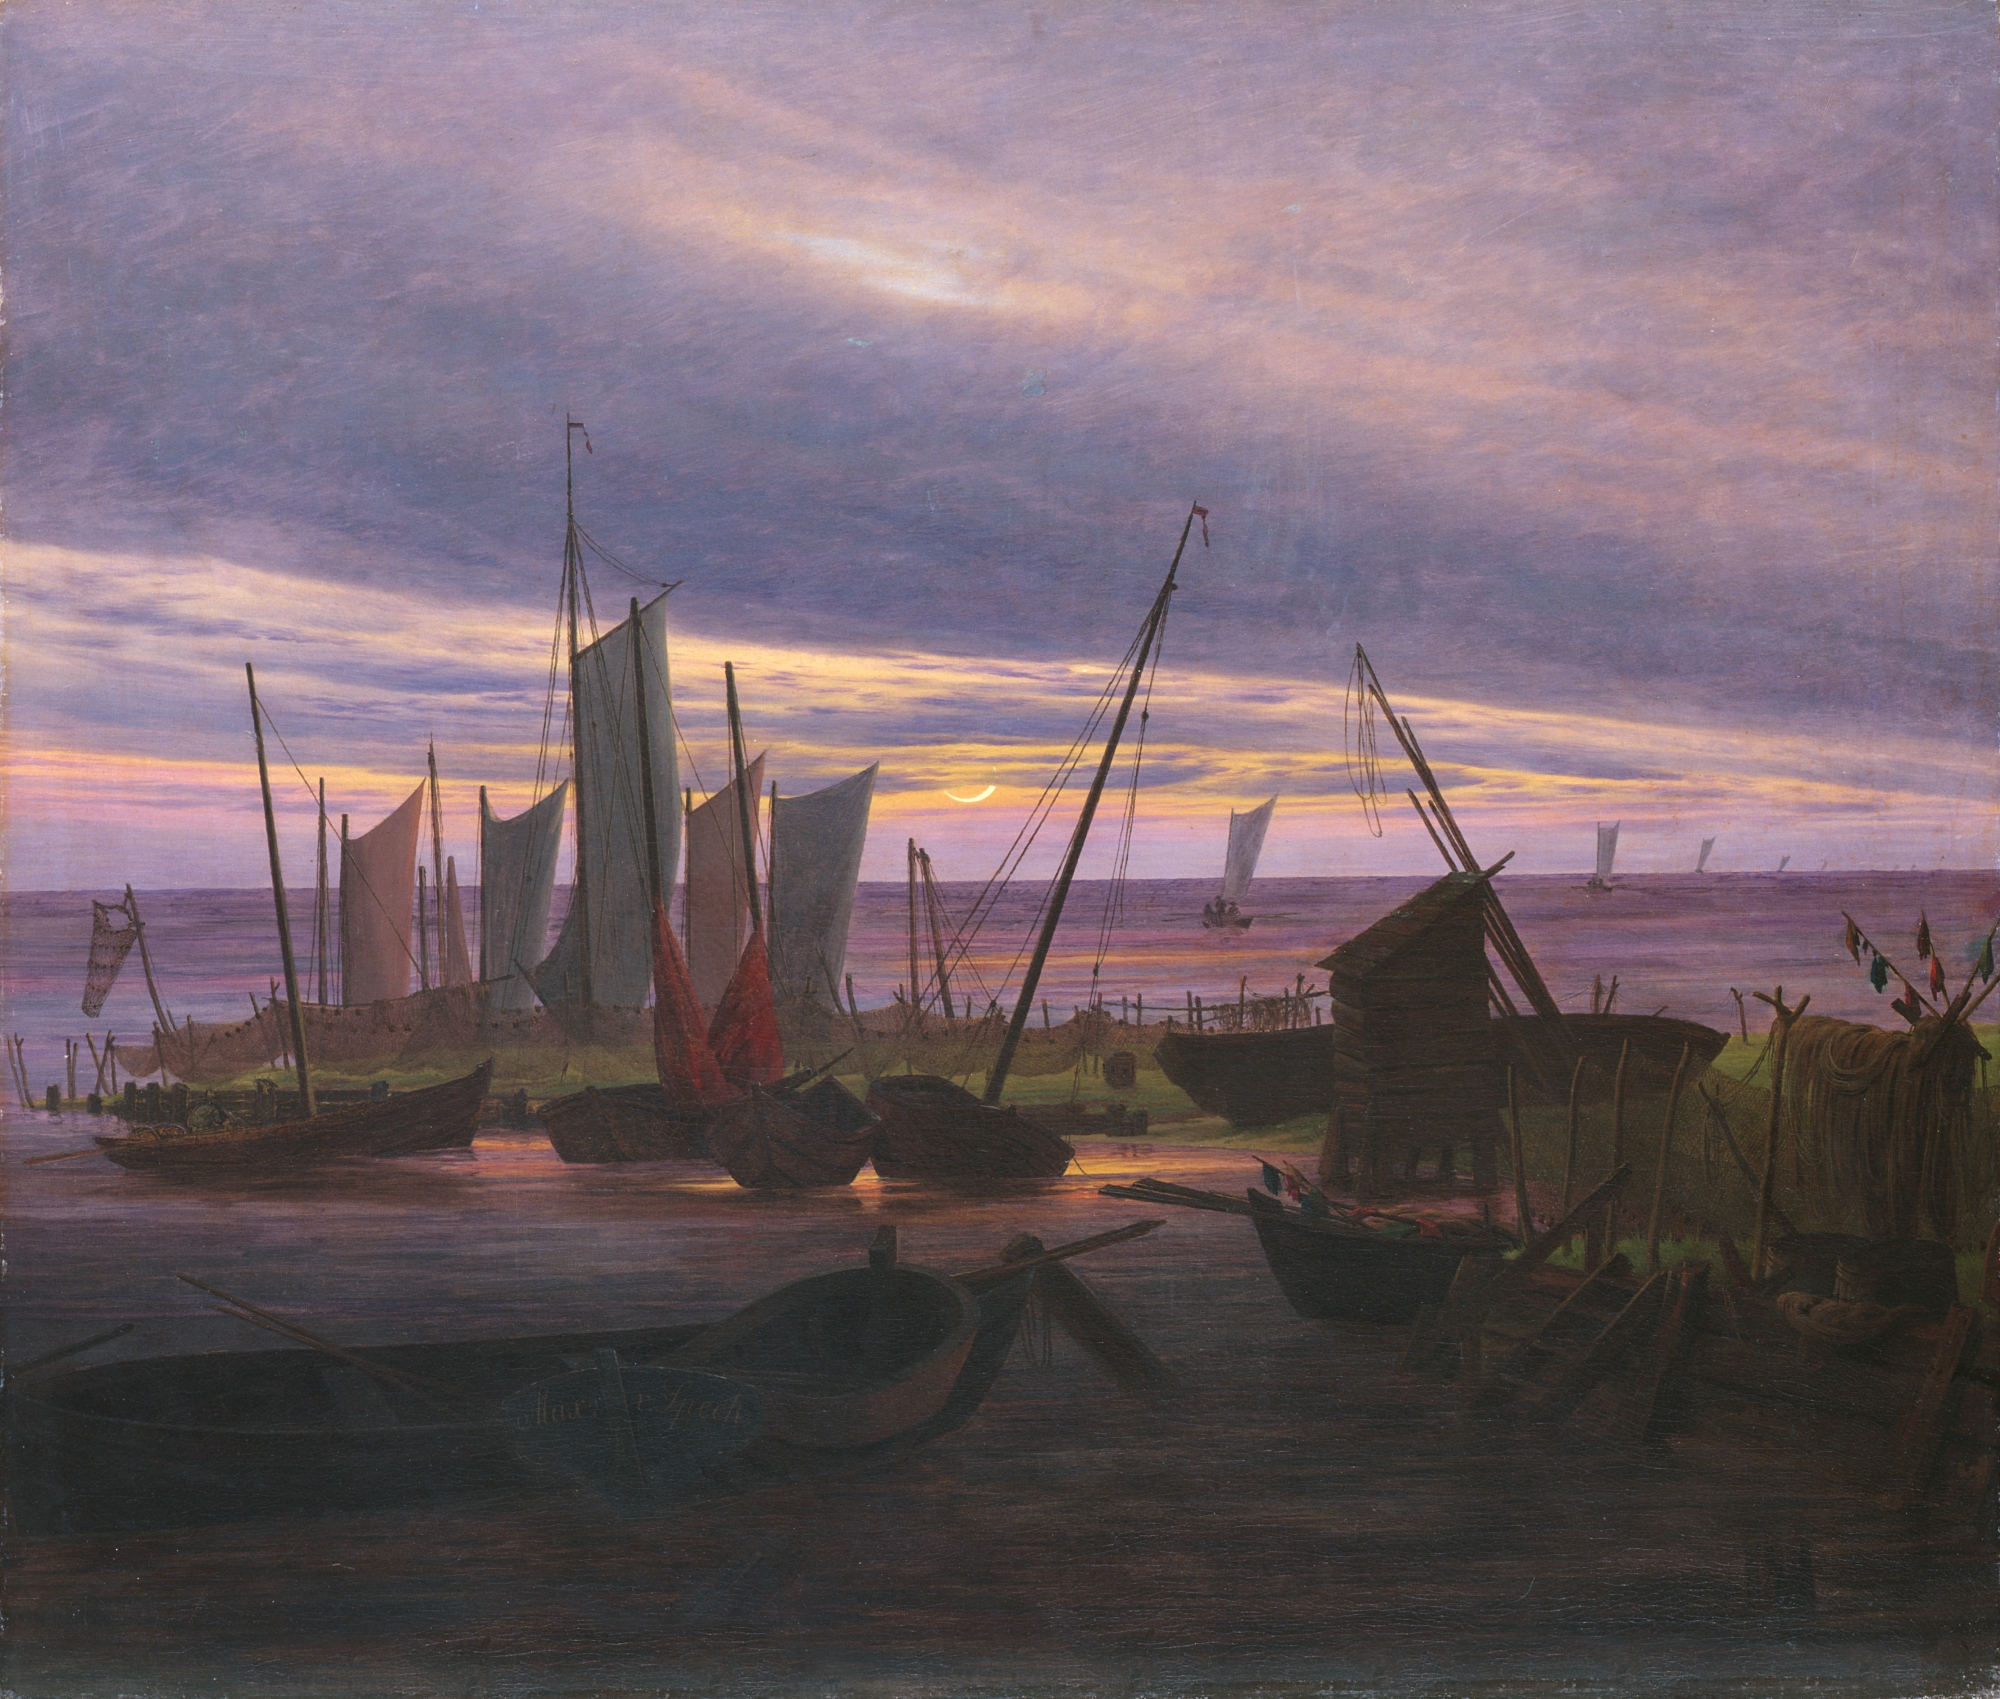 Boten in de haven bij avond by Caspar Friedrich - 1828 - 76,5 x 88,2 cm Staatliche Kunstsammlungen Dresden